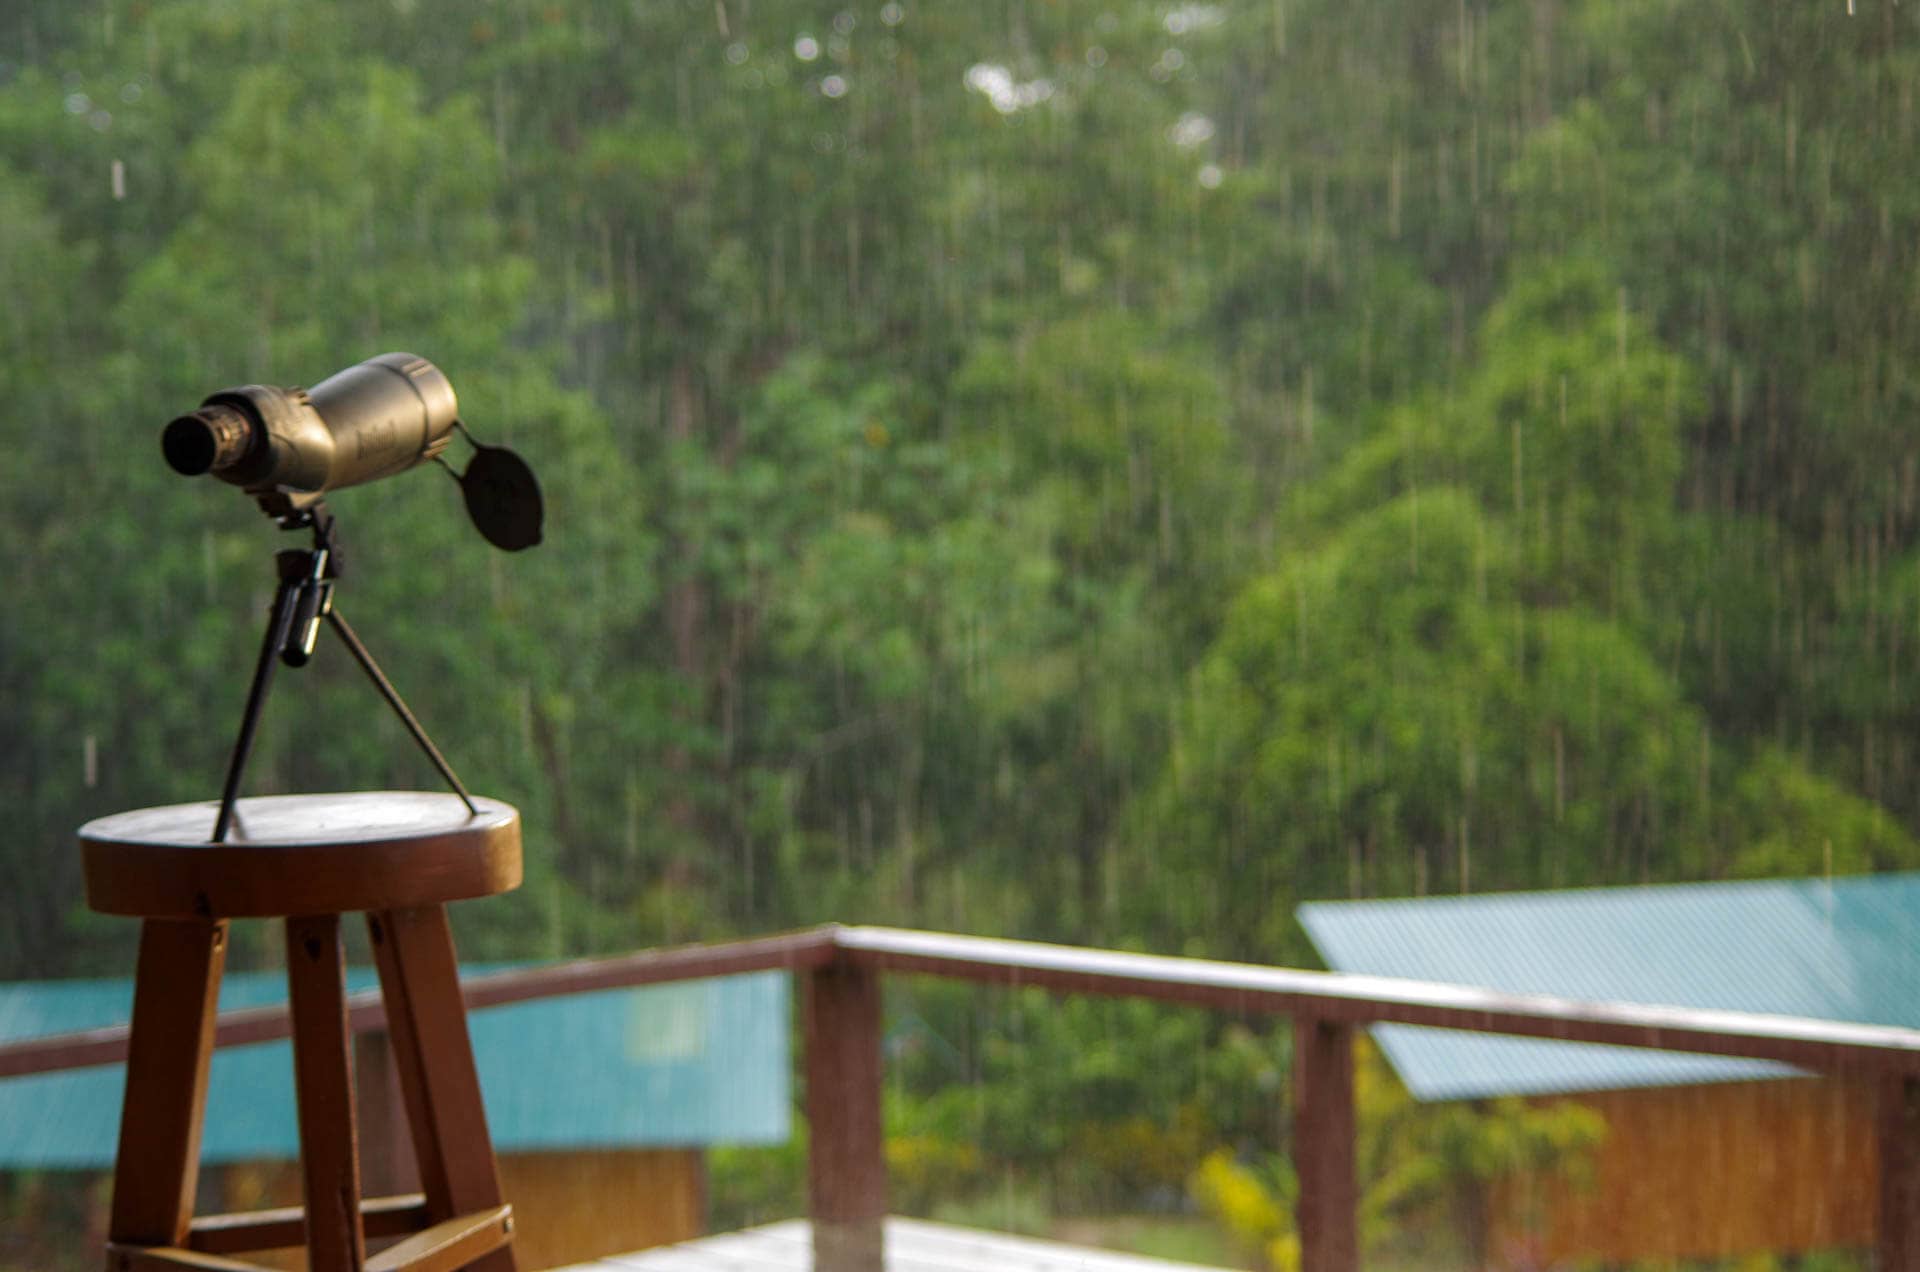 guide scope in rain